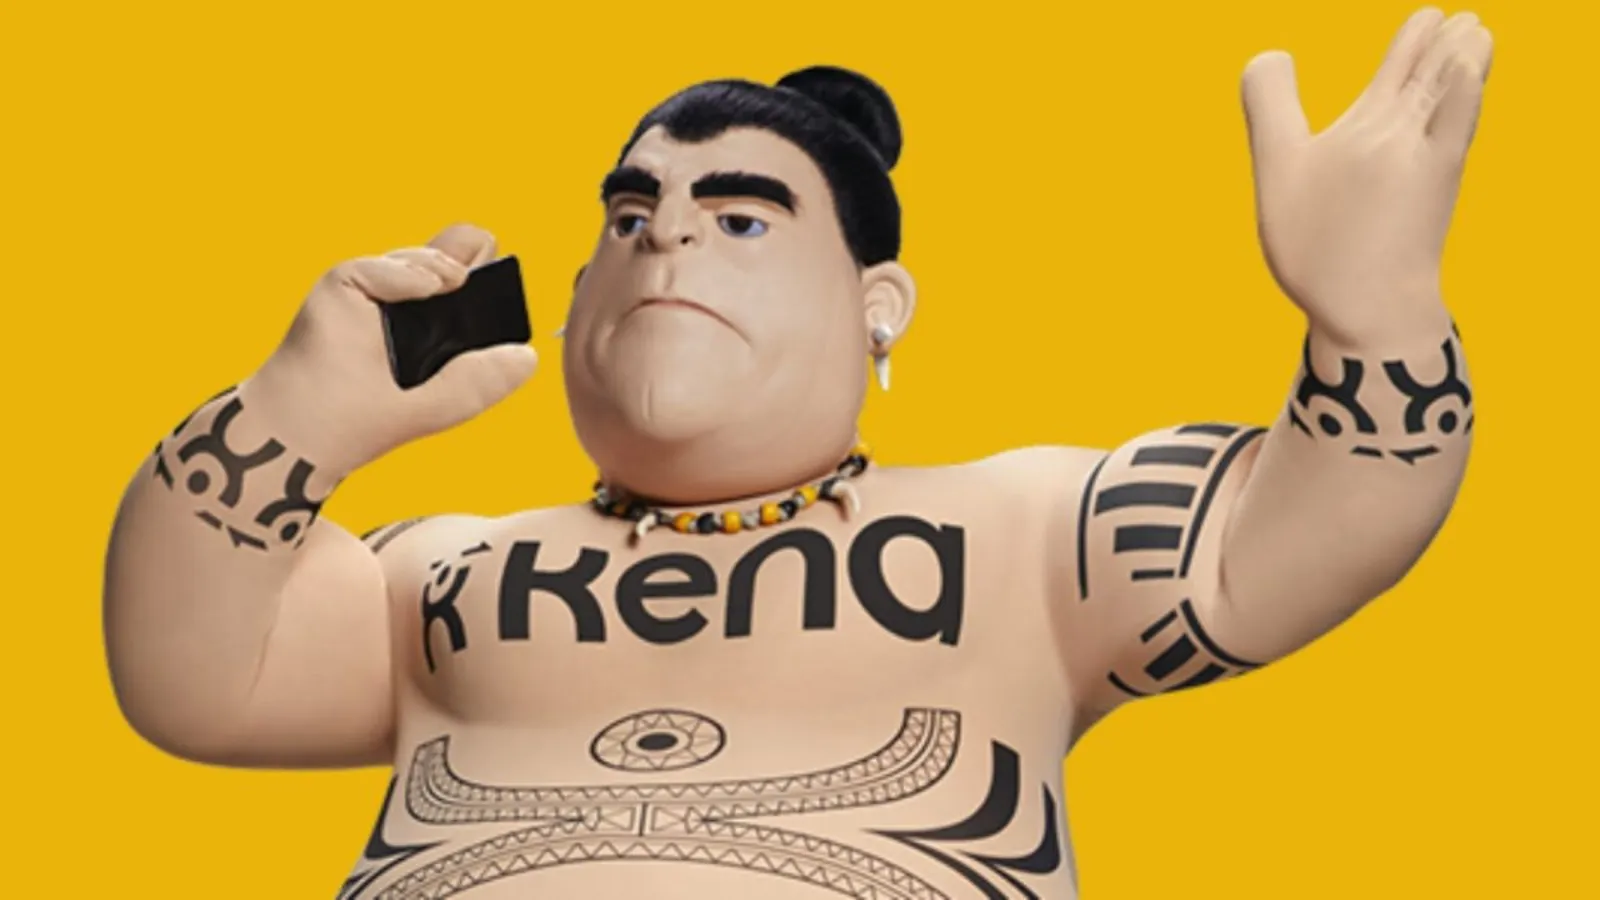 Kena, la simpatica mascotte di Kena mobile